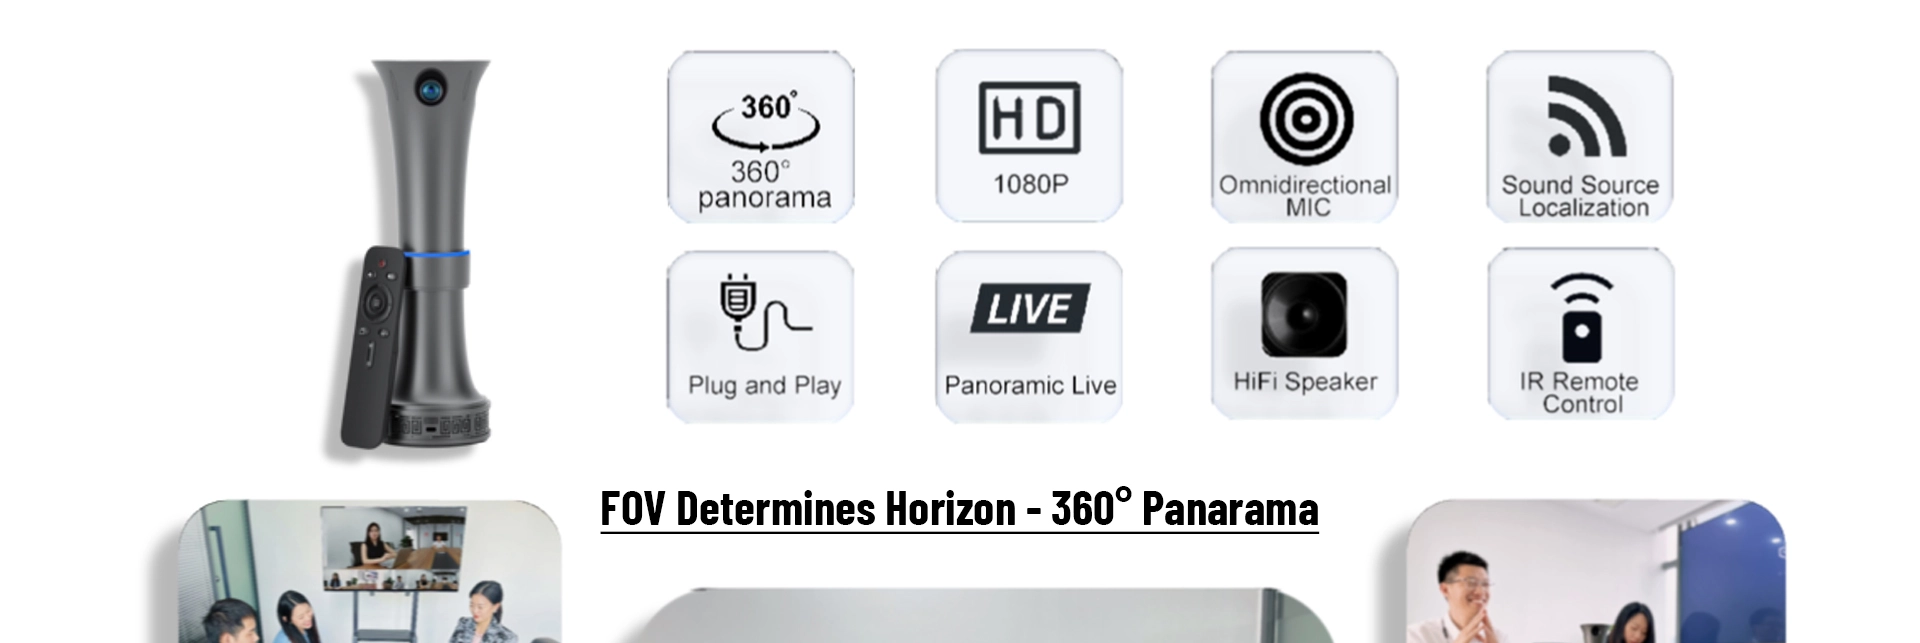 Videocamera panoramica per videoconferenze a 360 gradi con vivavoce